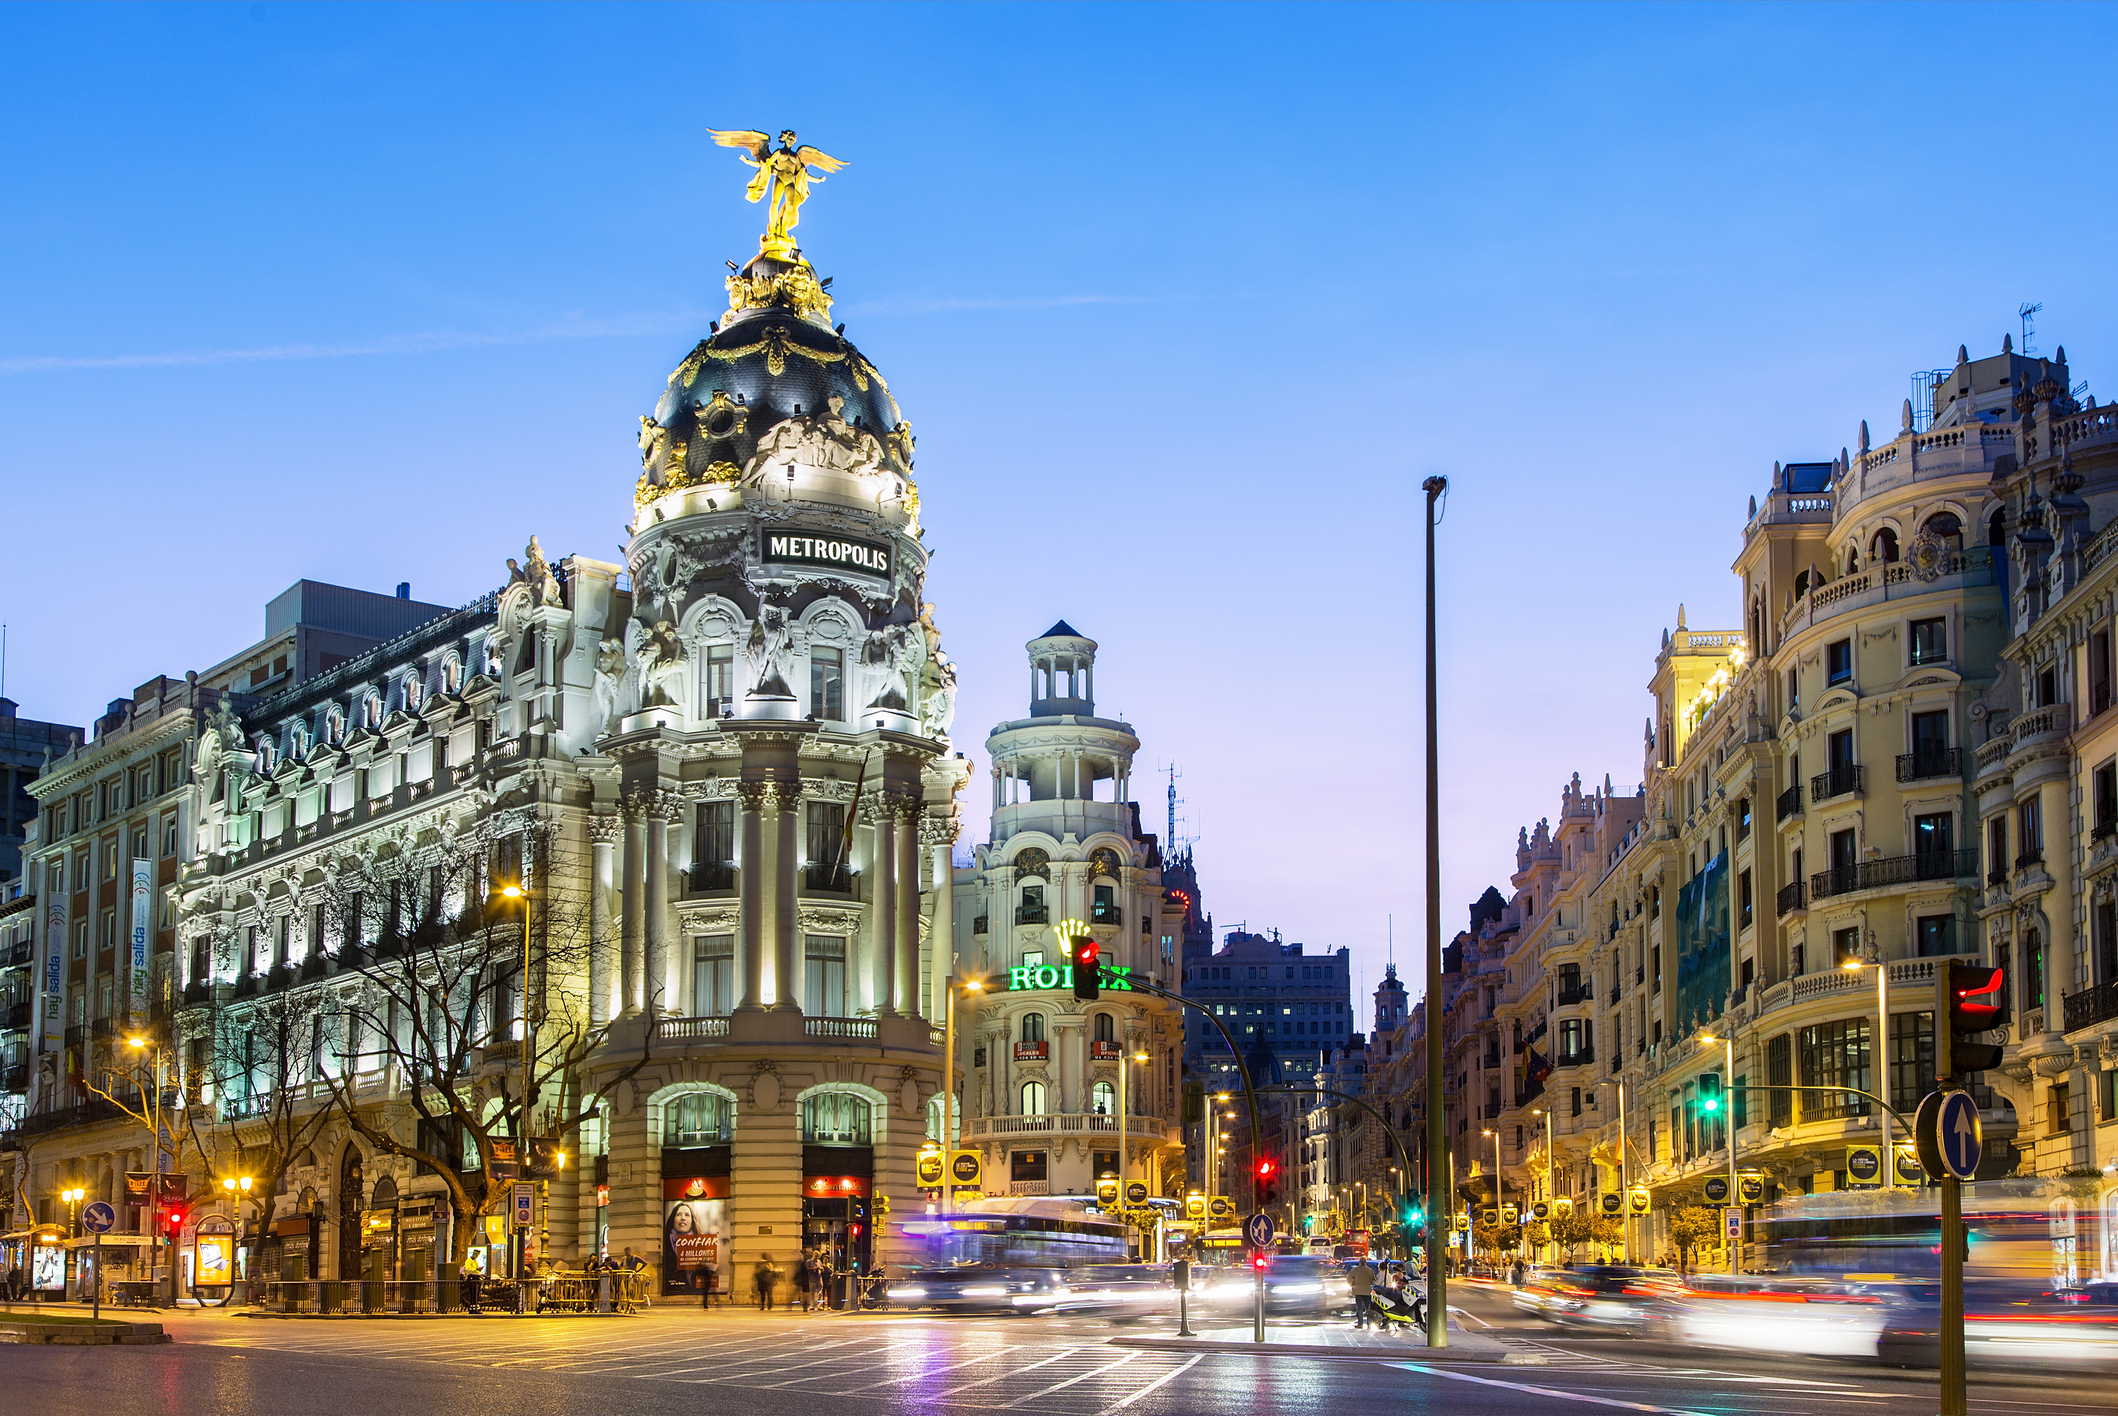 Dónde comer en Madrid: vinotecas, cafés y restaurantes